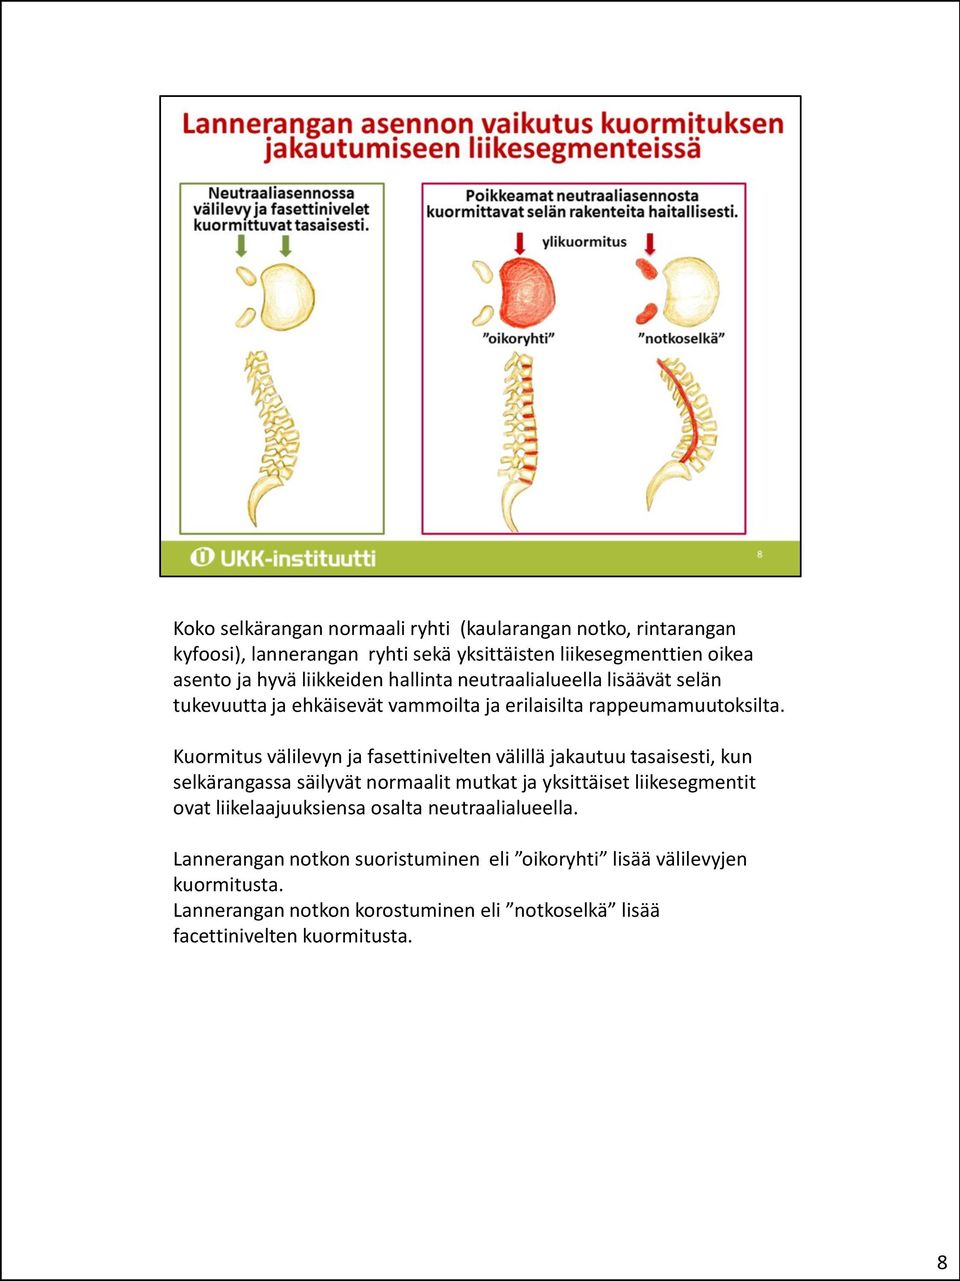 Kuormitus välilevyn ja fasettinivelten välillä jakautuu tasaisesti, kun selkärangassa säilyvät normaalit mutkat ja yksittäiset liikesegmentit ovat